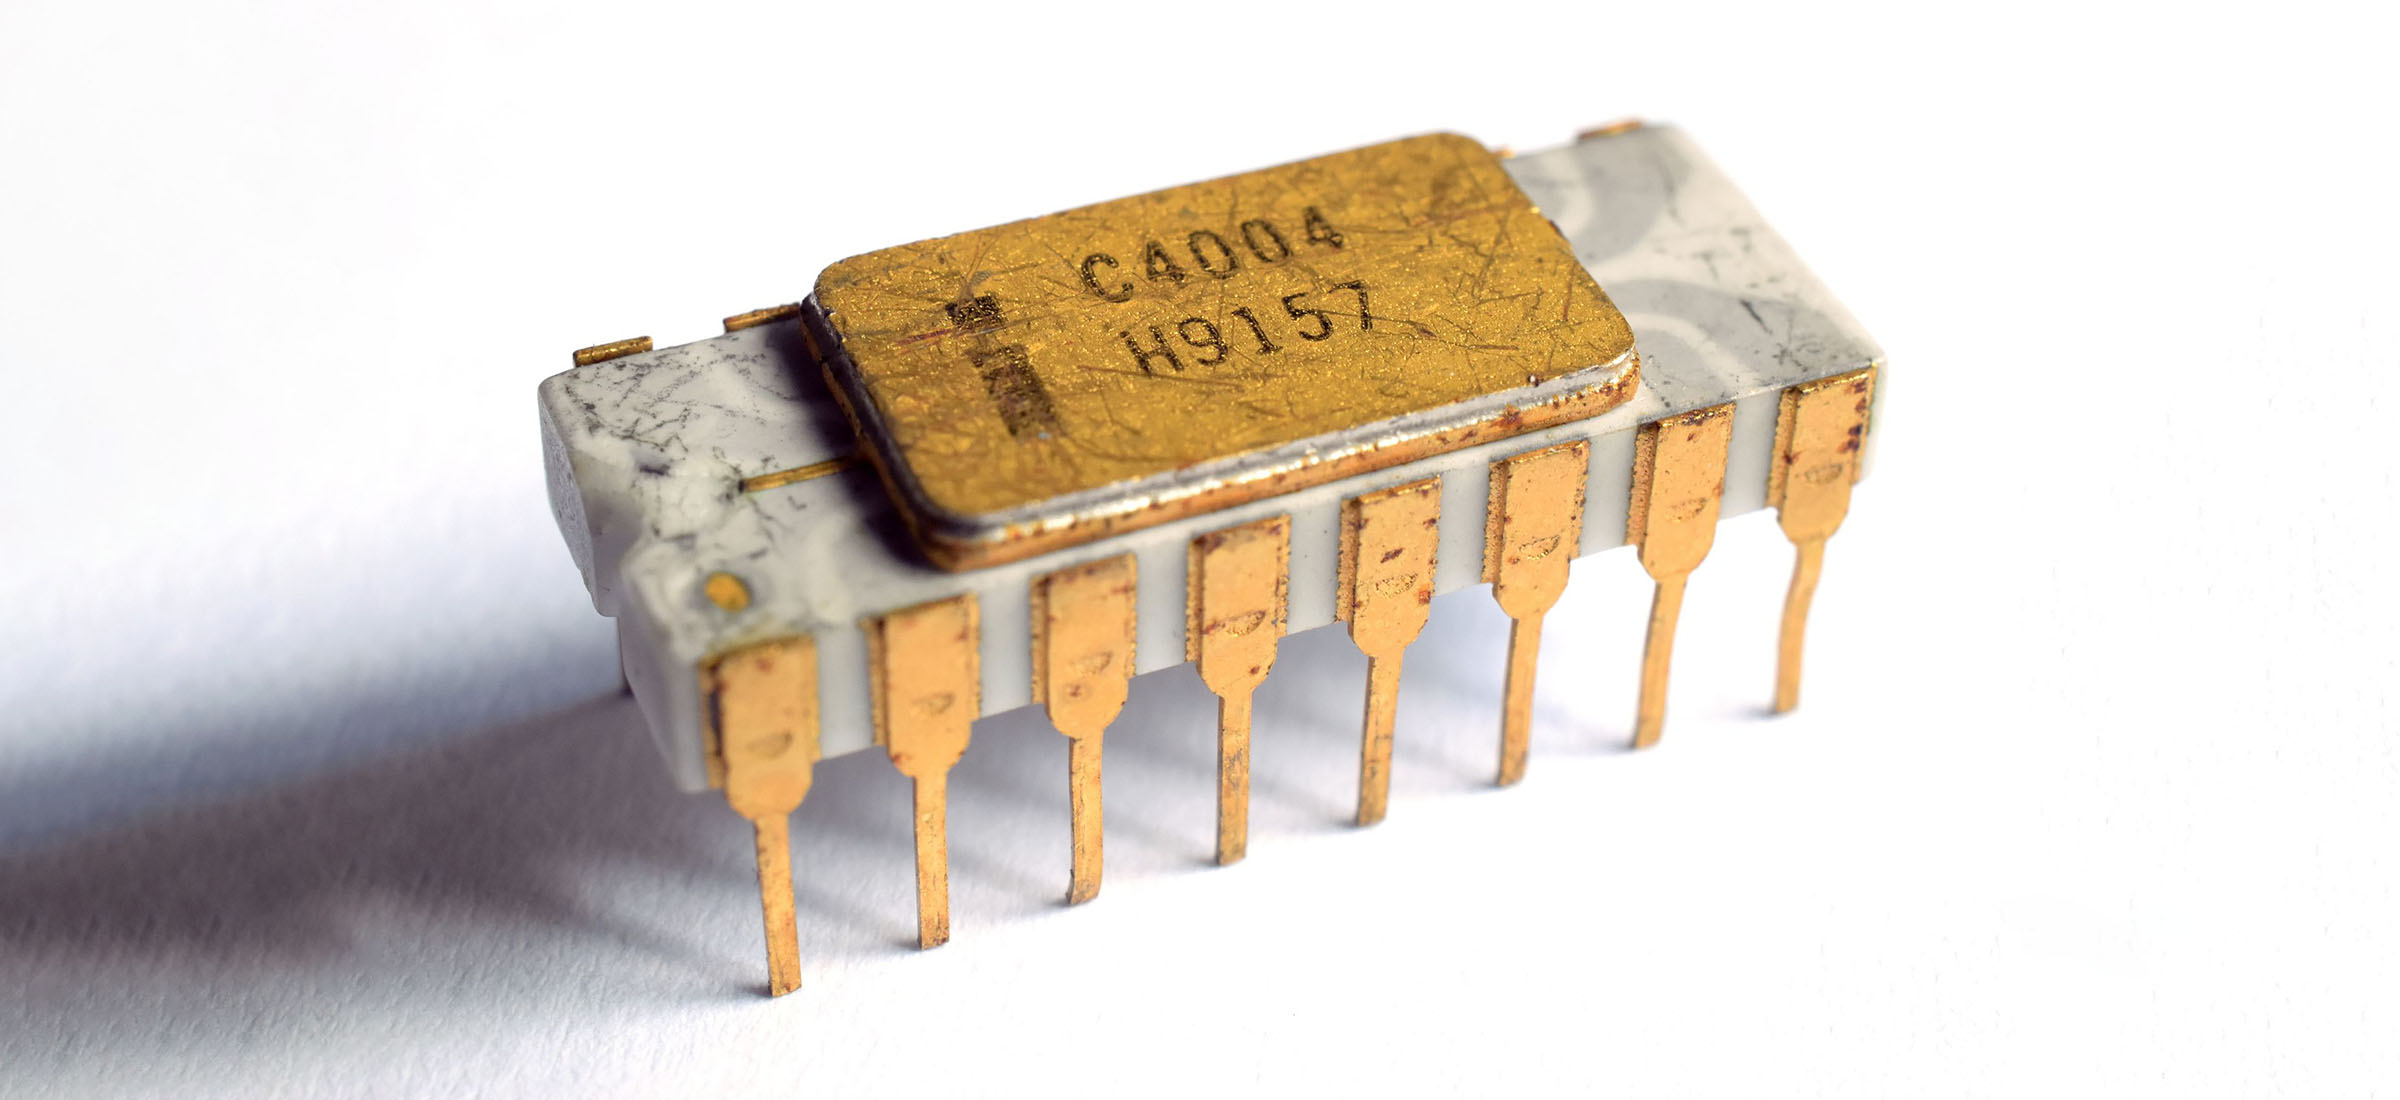 Первый интел. Первый микропроцессор Intel 4004. Фирма Intel выпустила свой первый микропроцессор — модель 4004. Микропроцессоры 1970. Первый микропроцессор, получивший название Intel 4004,.